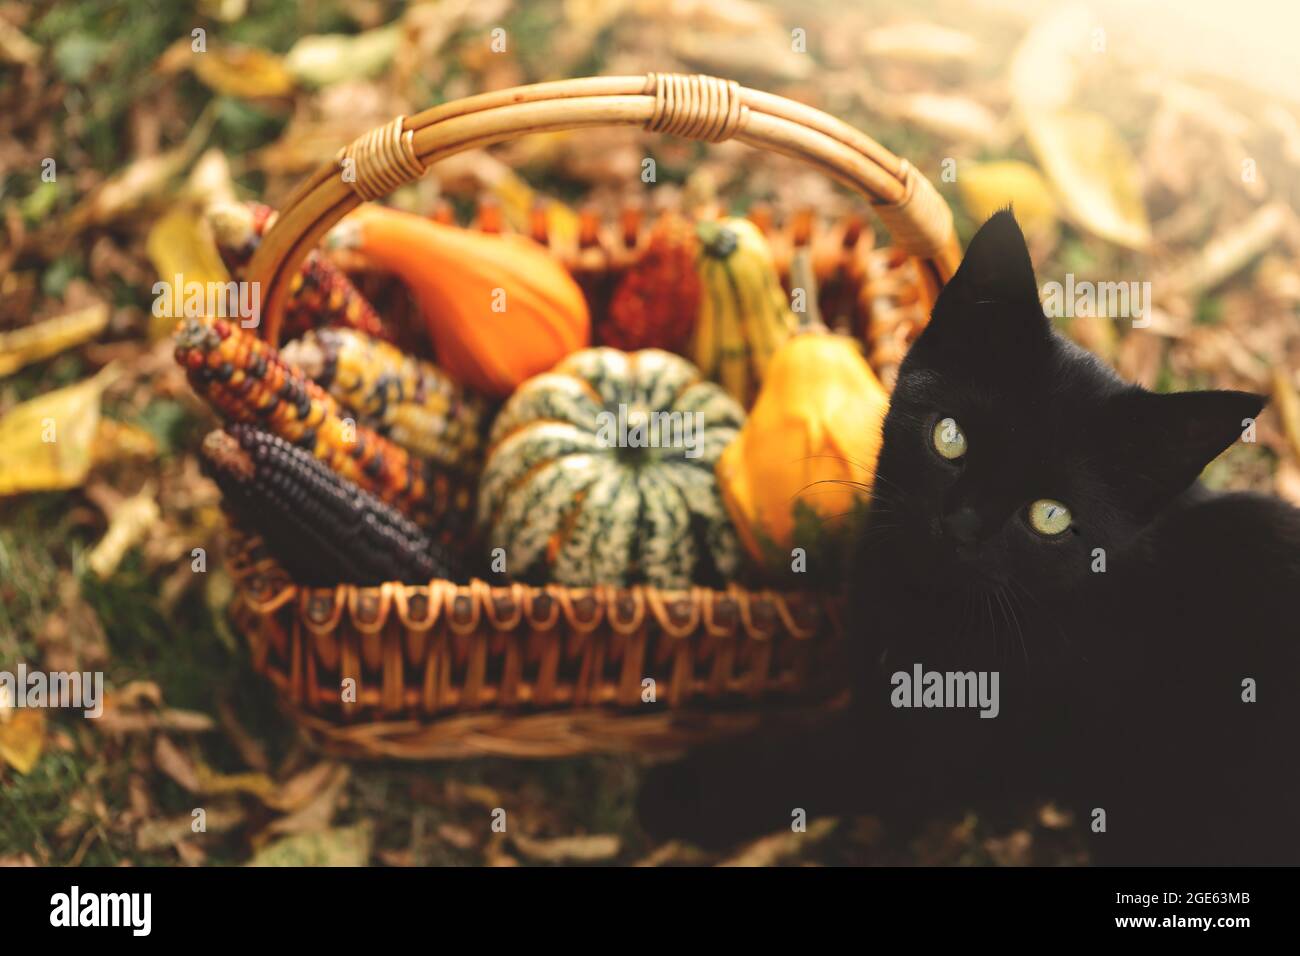 Herbstzeit. Schwarze Katze mit einem Korb mit Gemüse. Halloween und Thanksgiving Feiertage. Kürbisse, Mais in einem Weidenkorb und eine schwarze Katze im Herbst Stockfoto